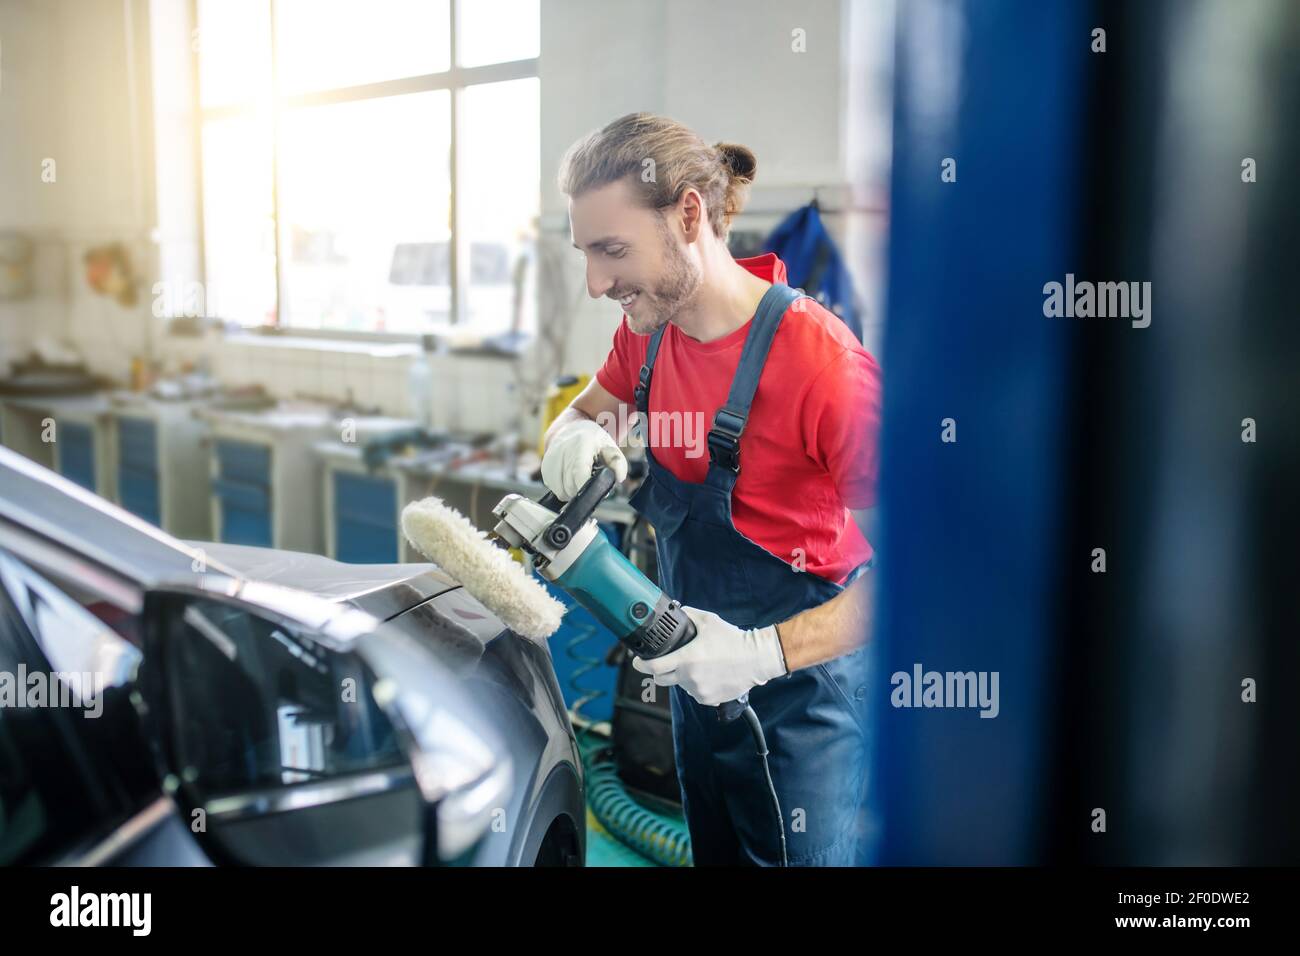 Smiling repairman grinding car body in garage Stock Photo